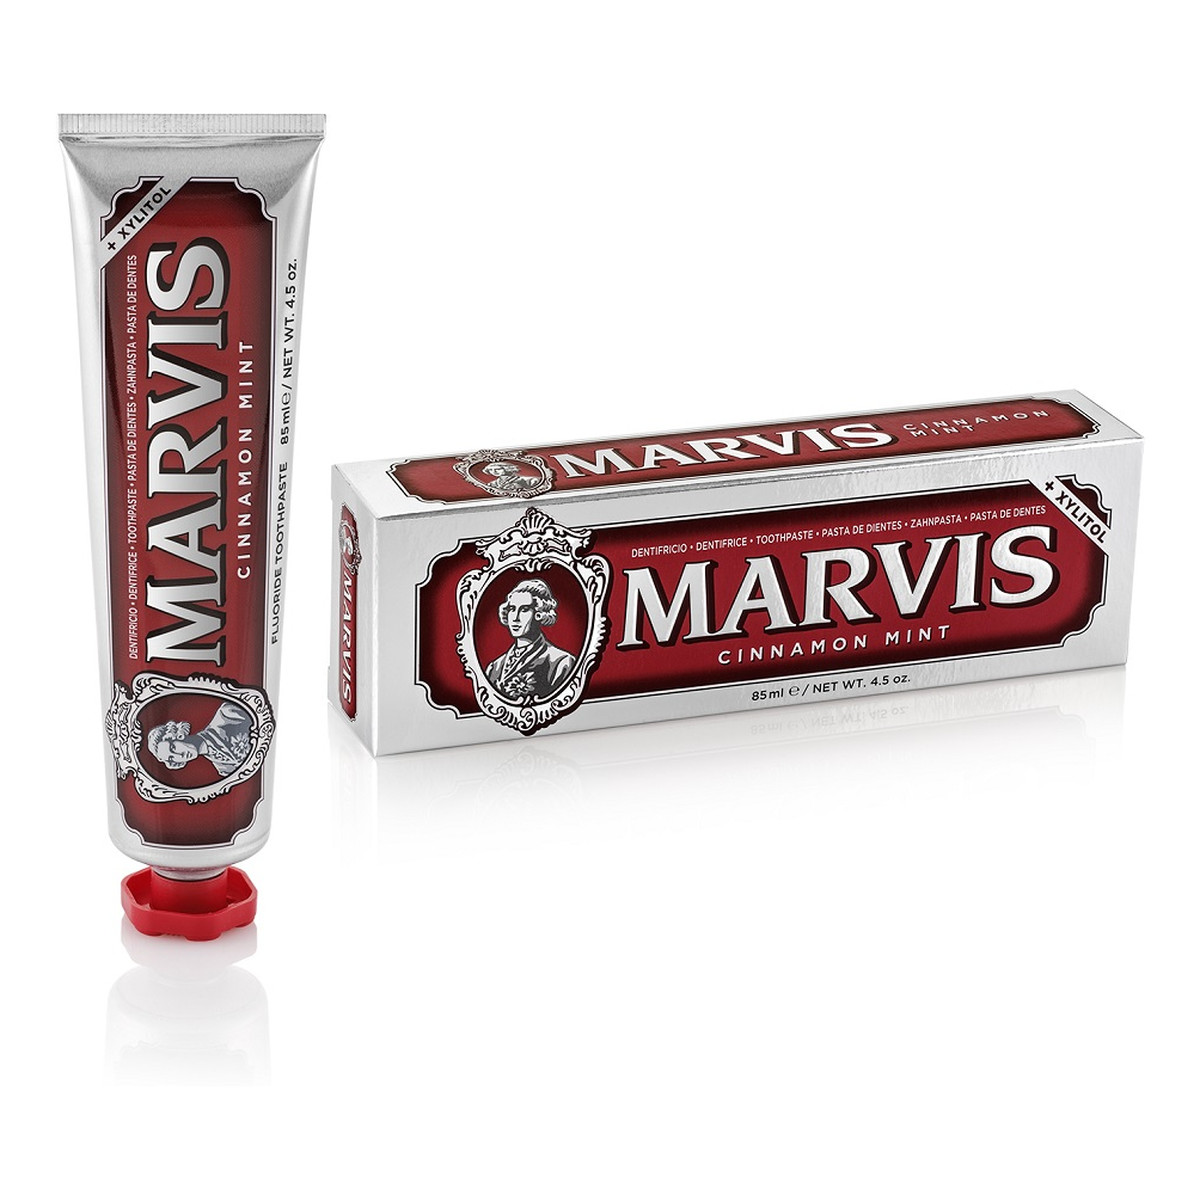 Marvis Fluoride toothpaste pasta do zębów z fluorem cinnamon mint 85ml